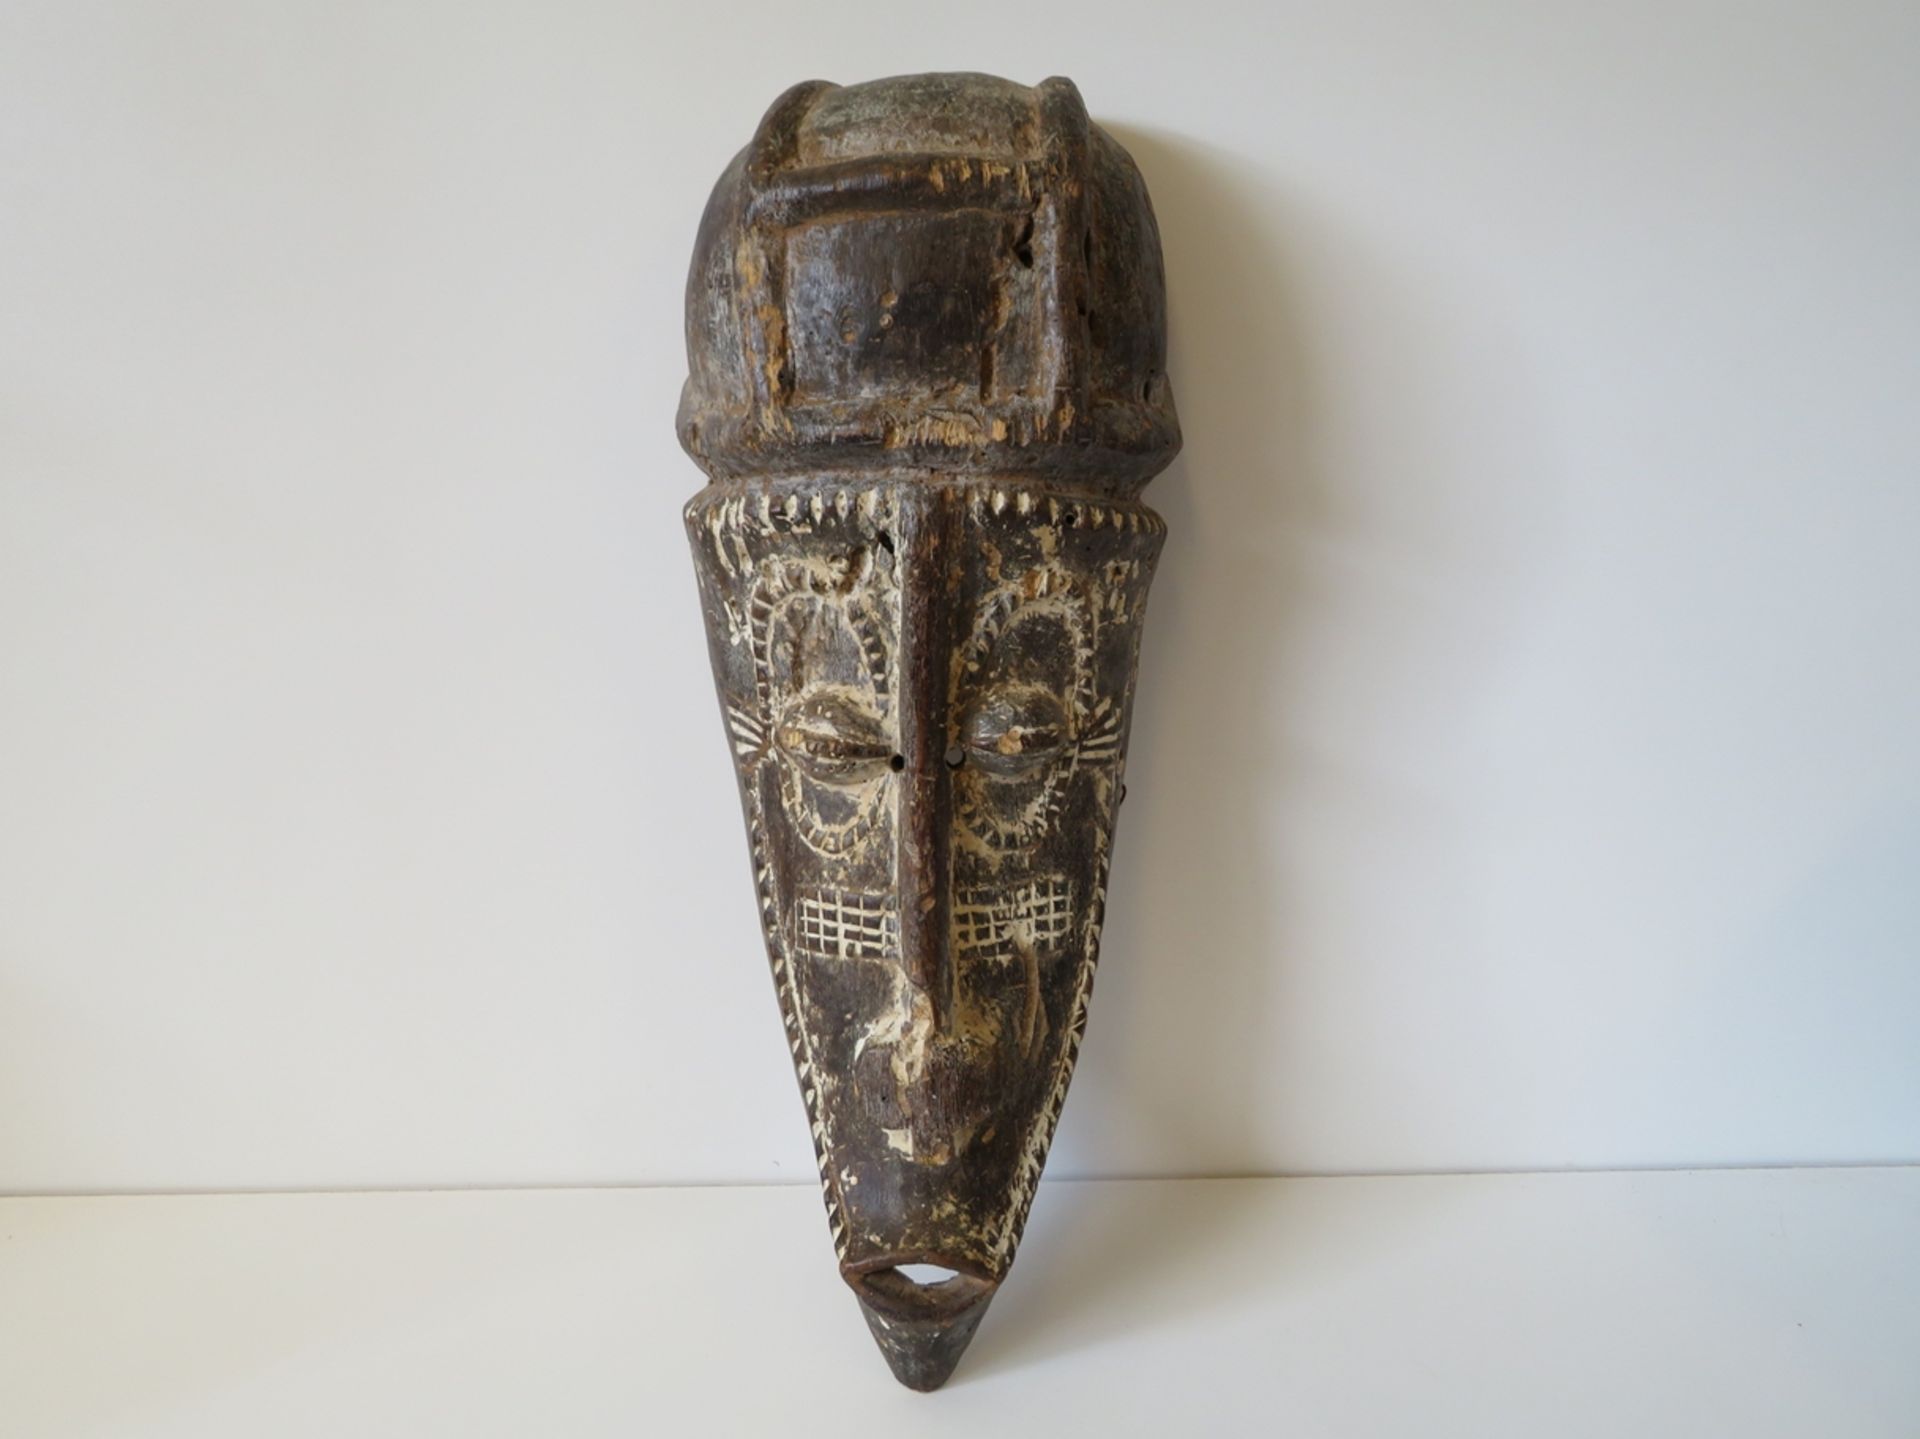 Antike Tanzmaske, Afrika, Holz geschnitzt, Narbentatauierungen, Reste von Kalkung, 54 x 20 x 13 cm.